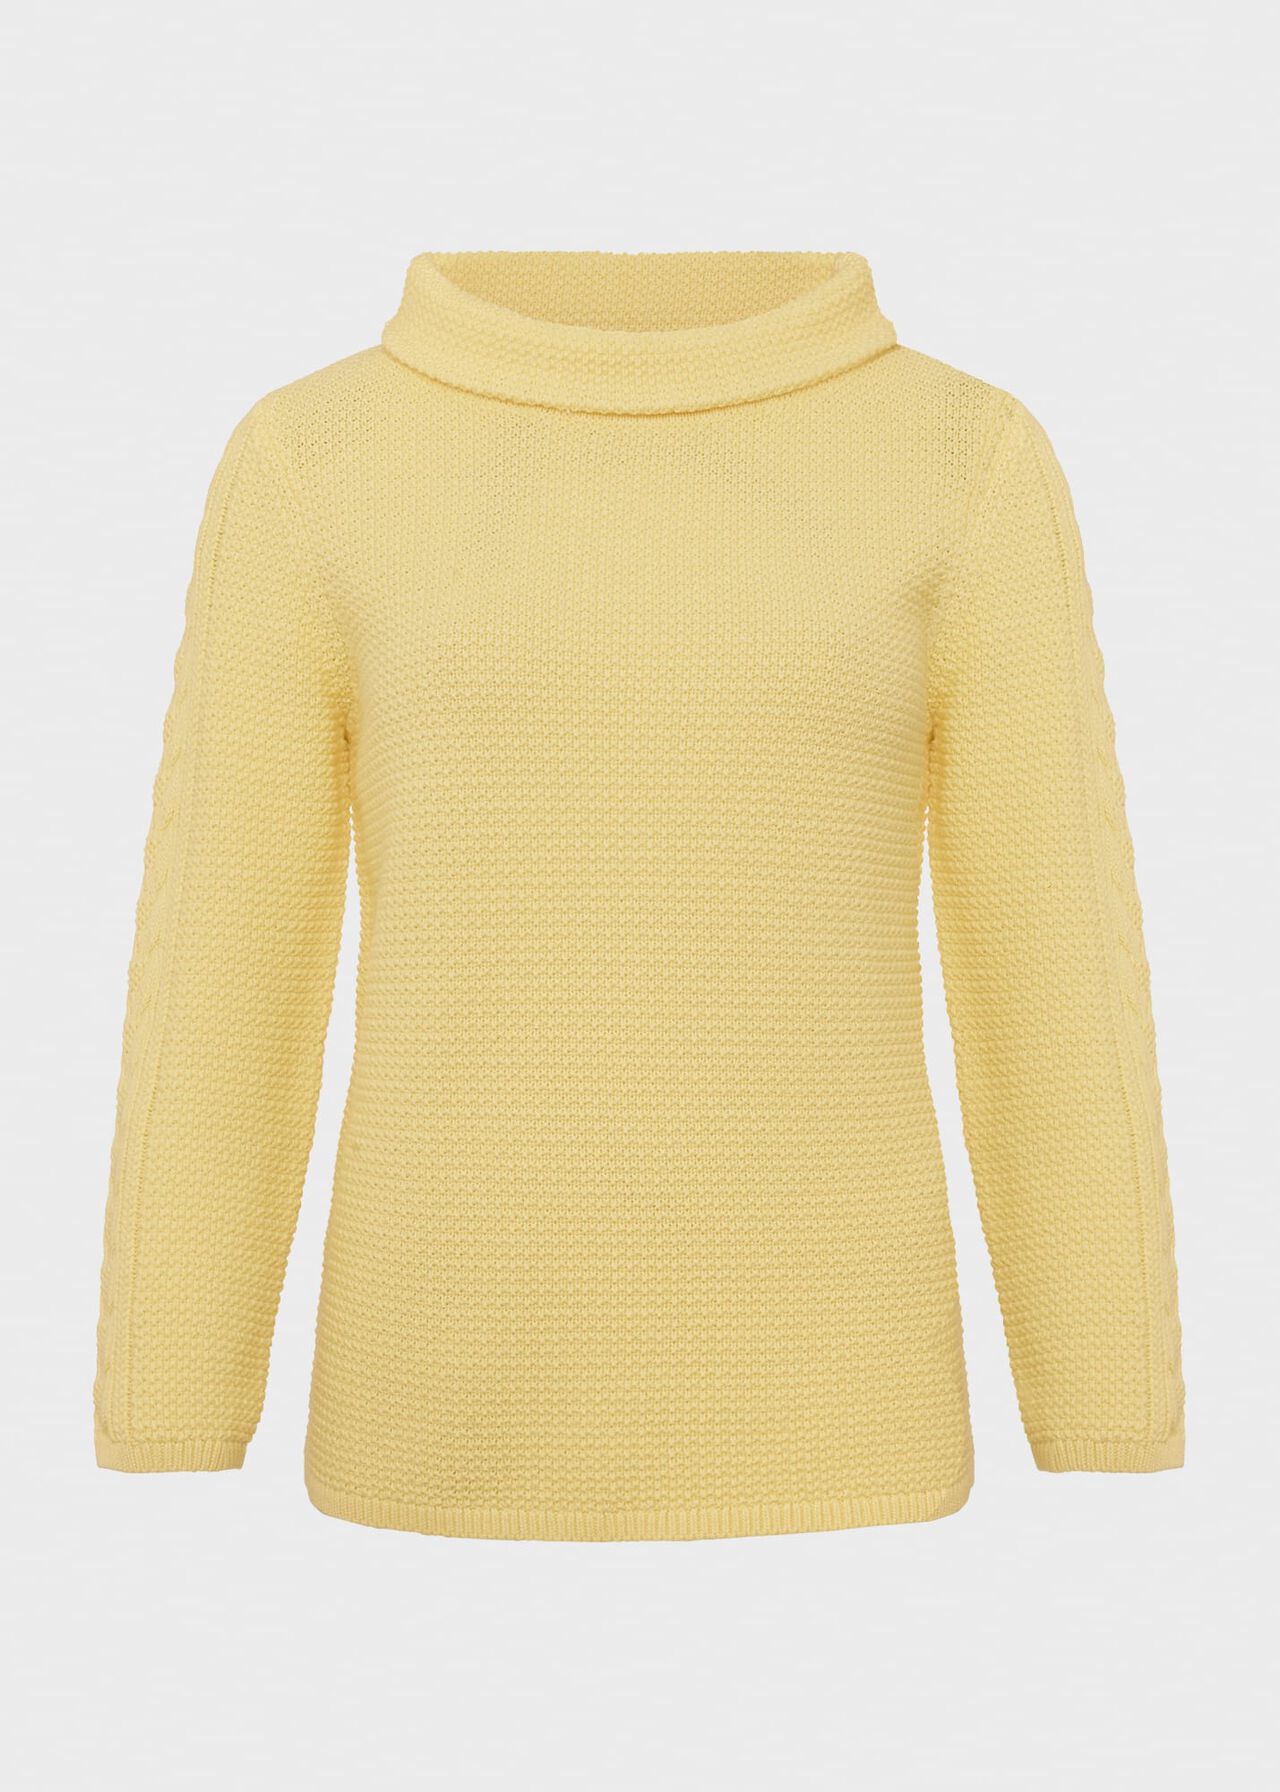 Camilla Cotton Sweater, Lemon Zest, hi-res